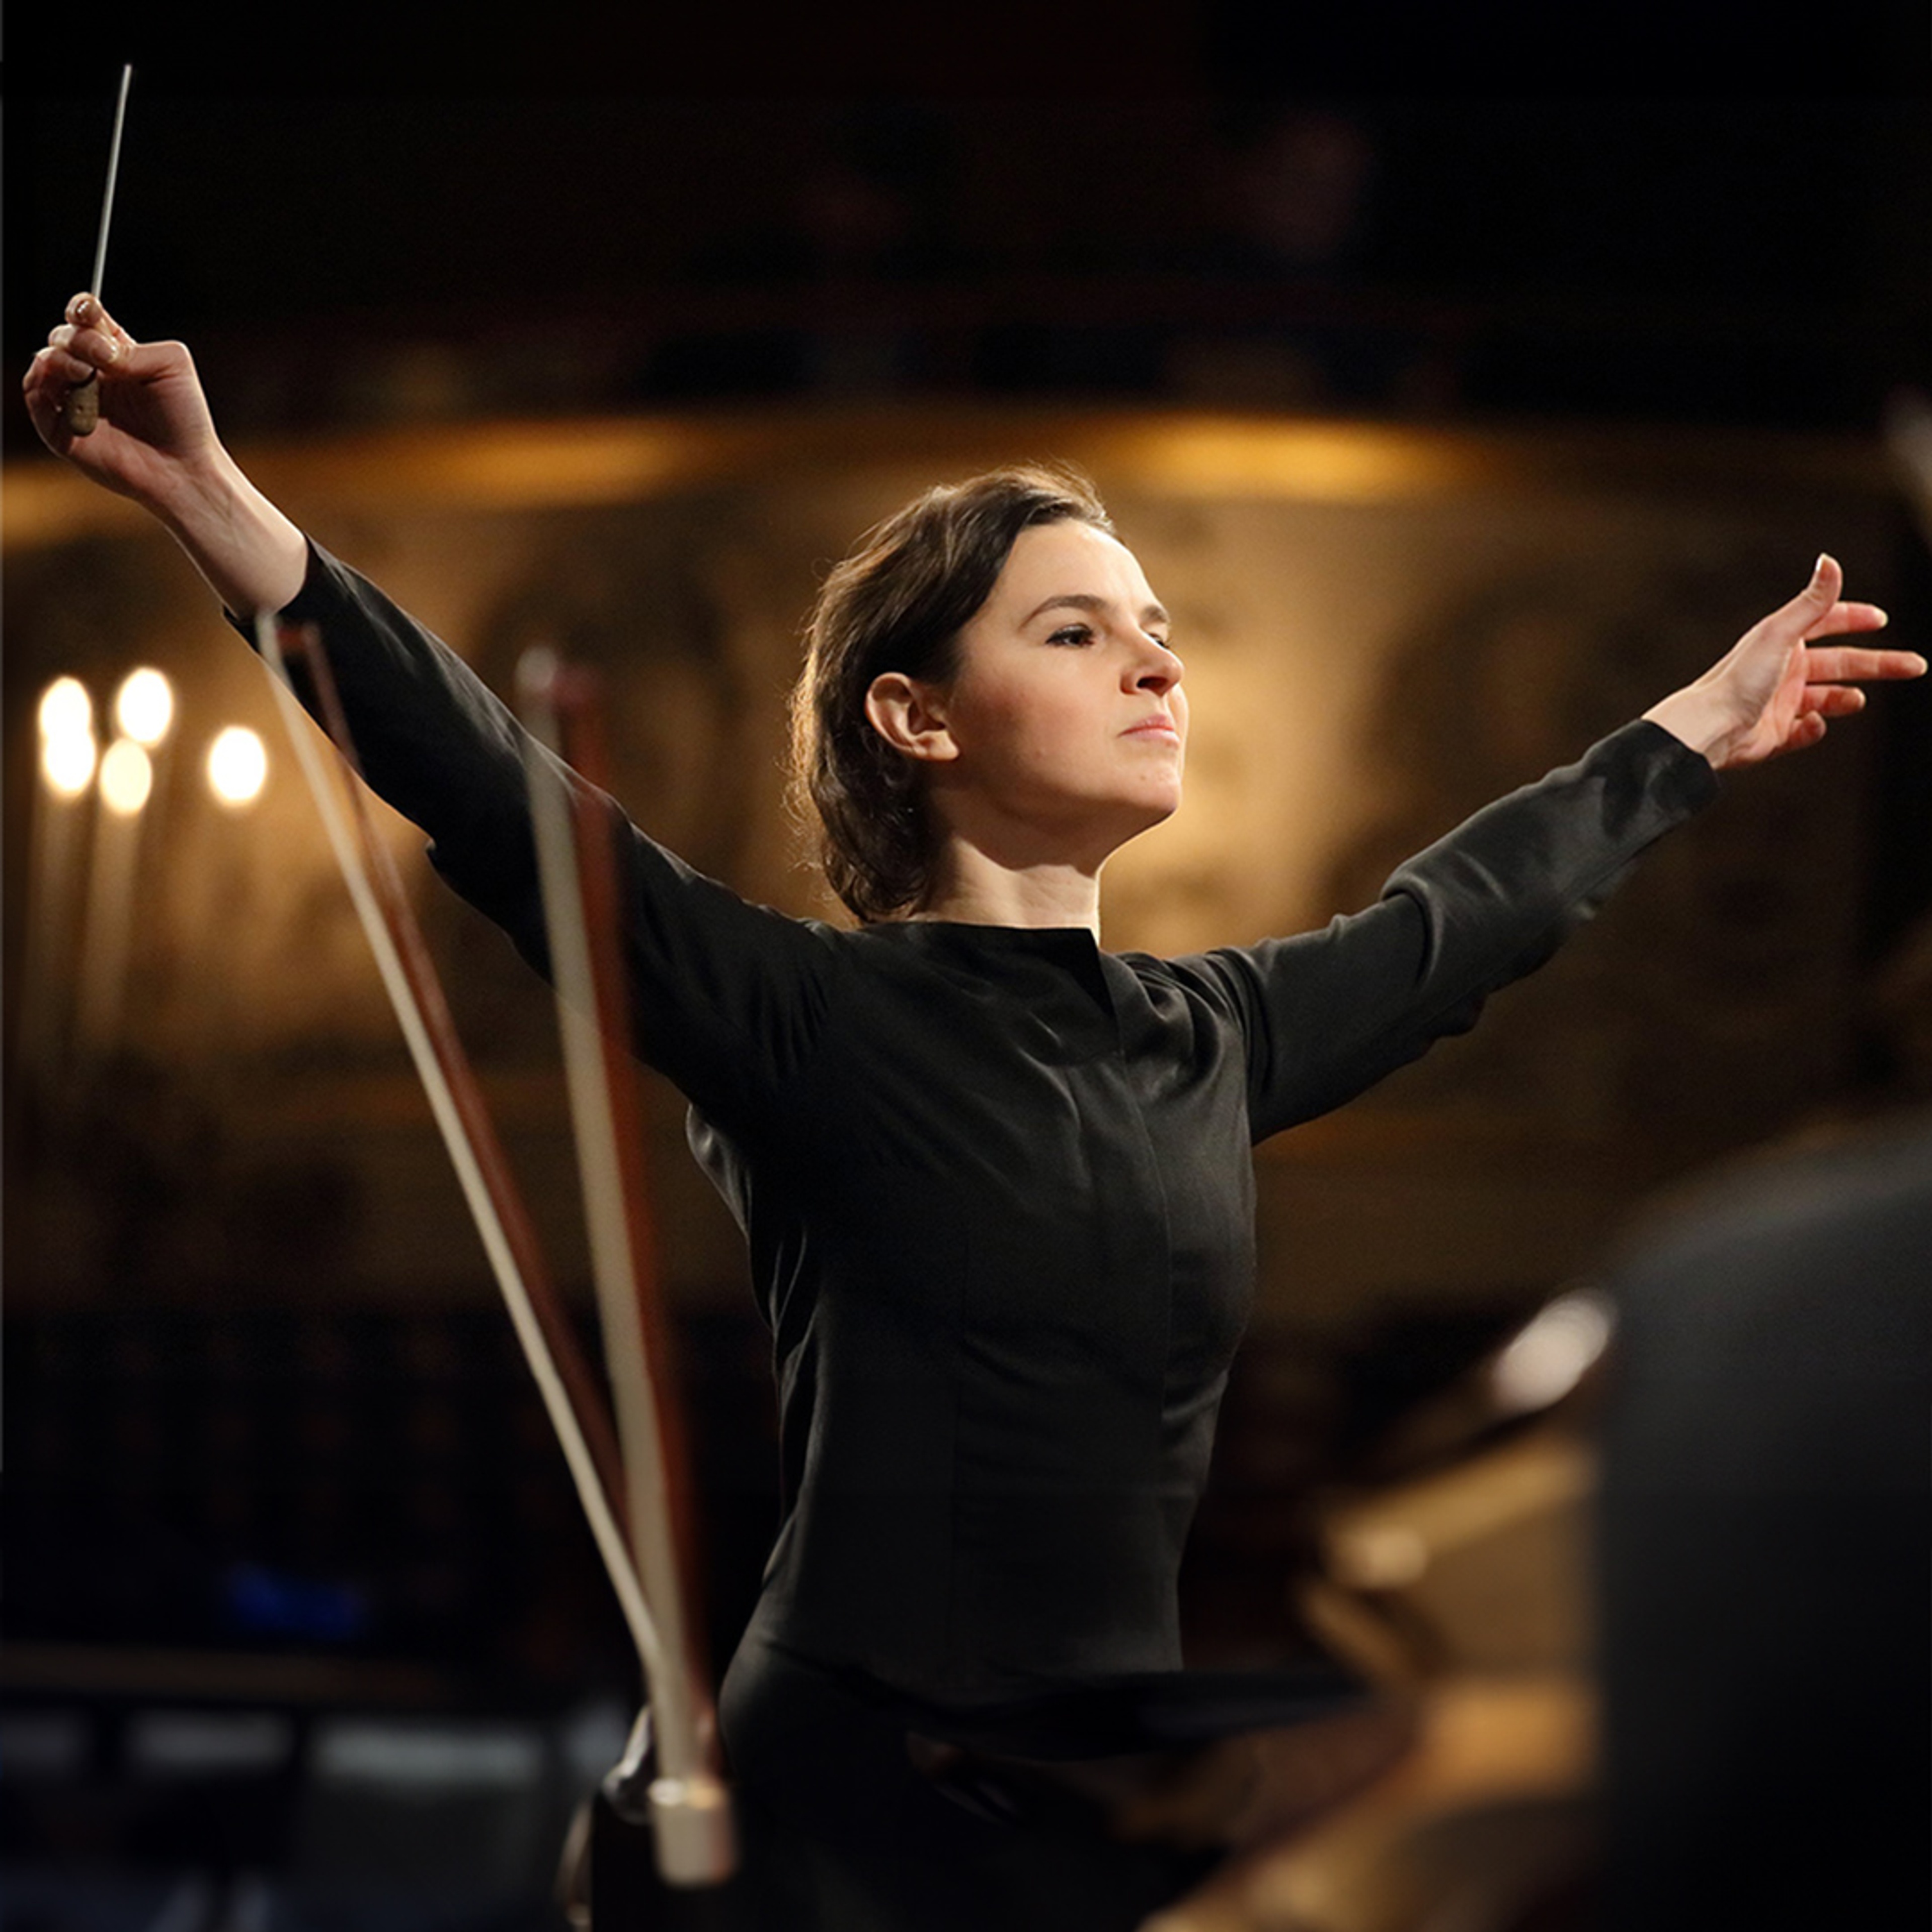 Kvinnlig dirigent med utsträckta armar.